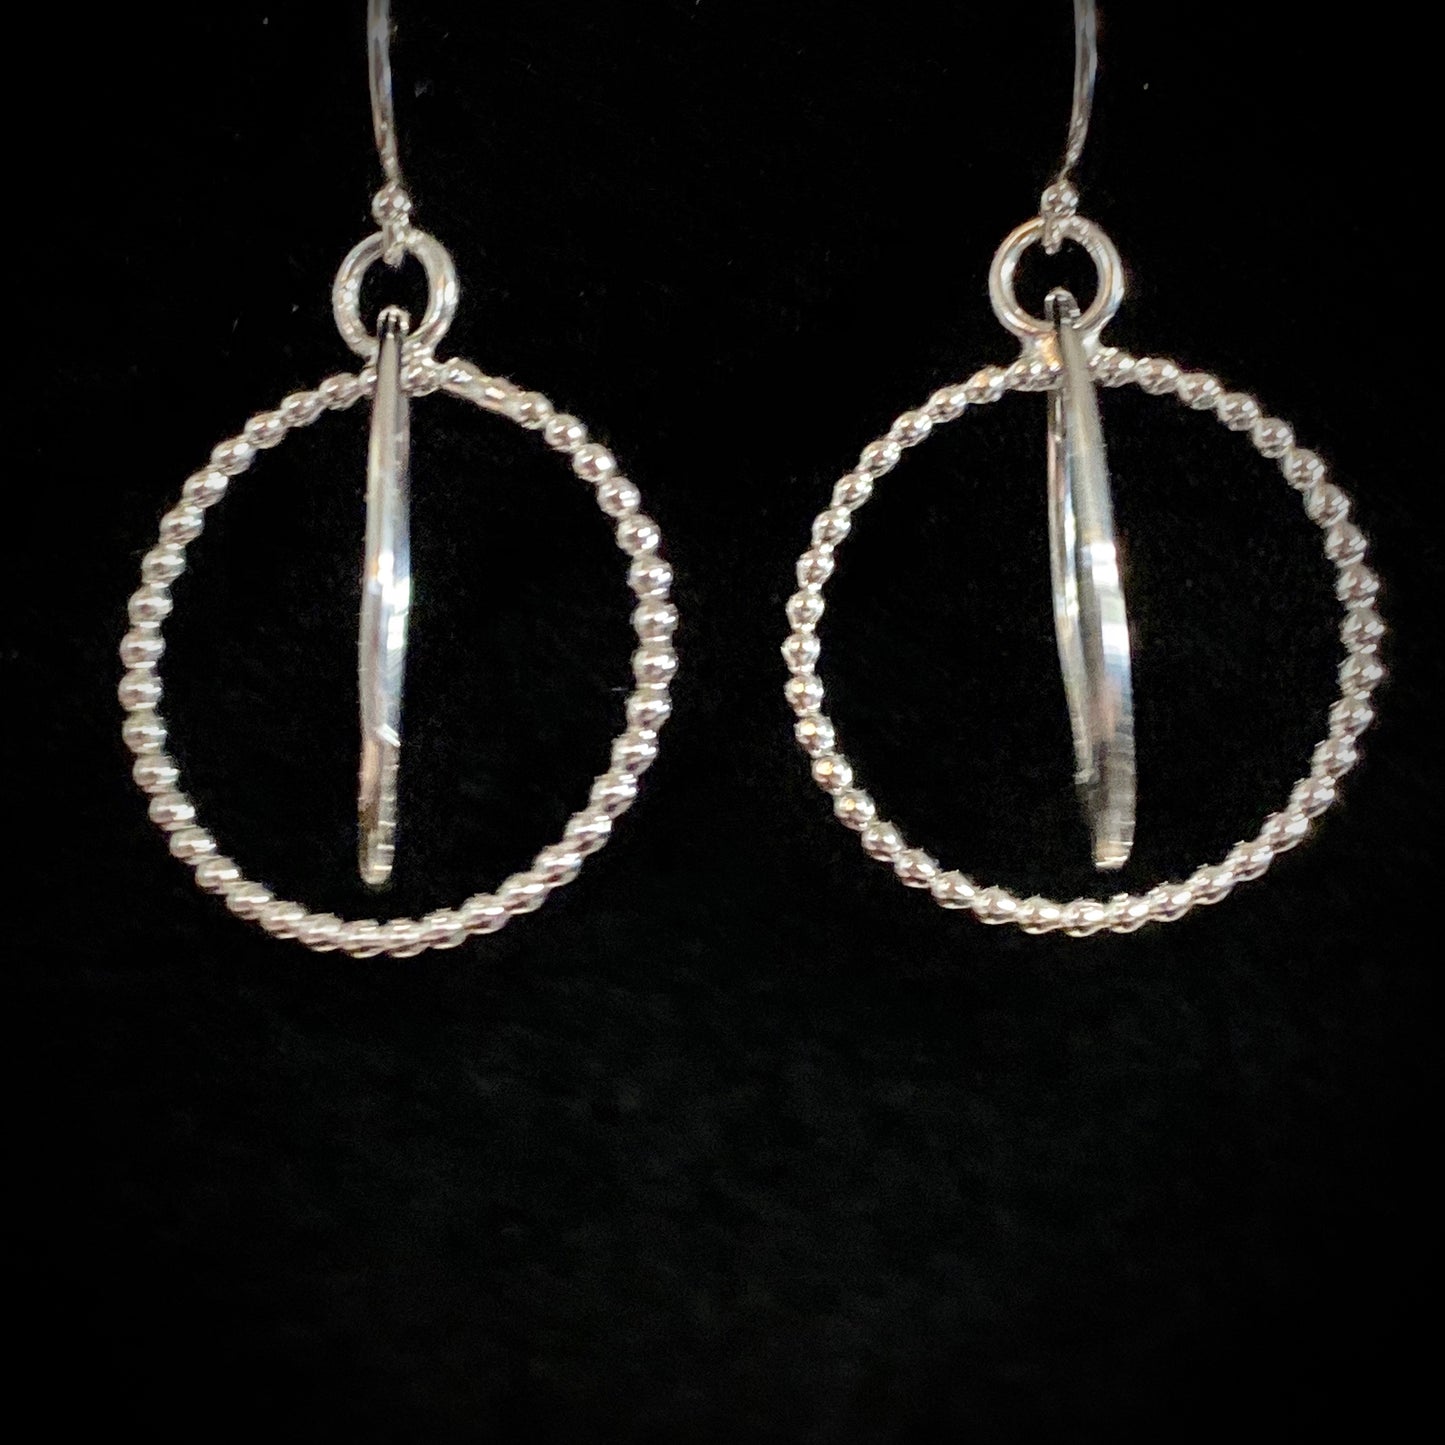 Handmade Reclaimed Sterling Silver Earrings